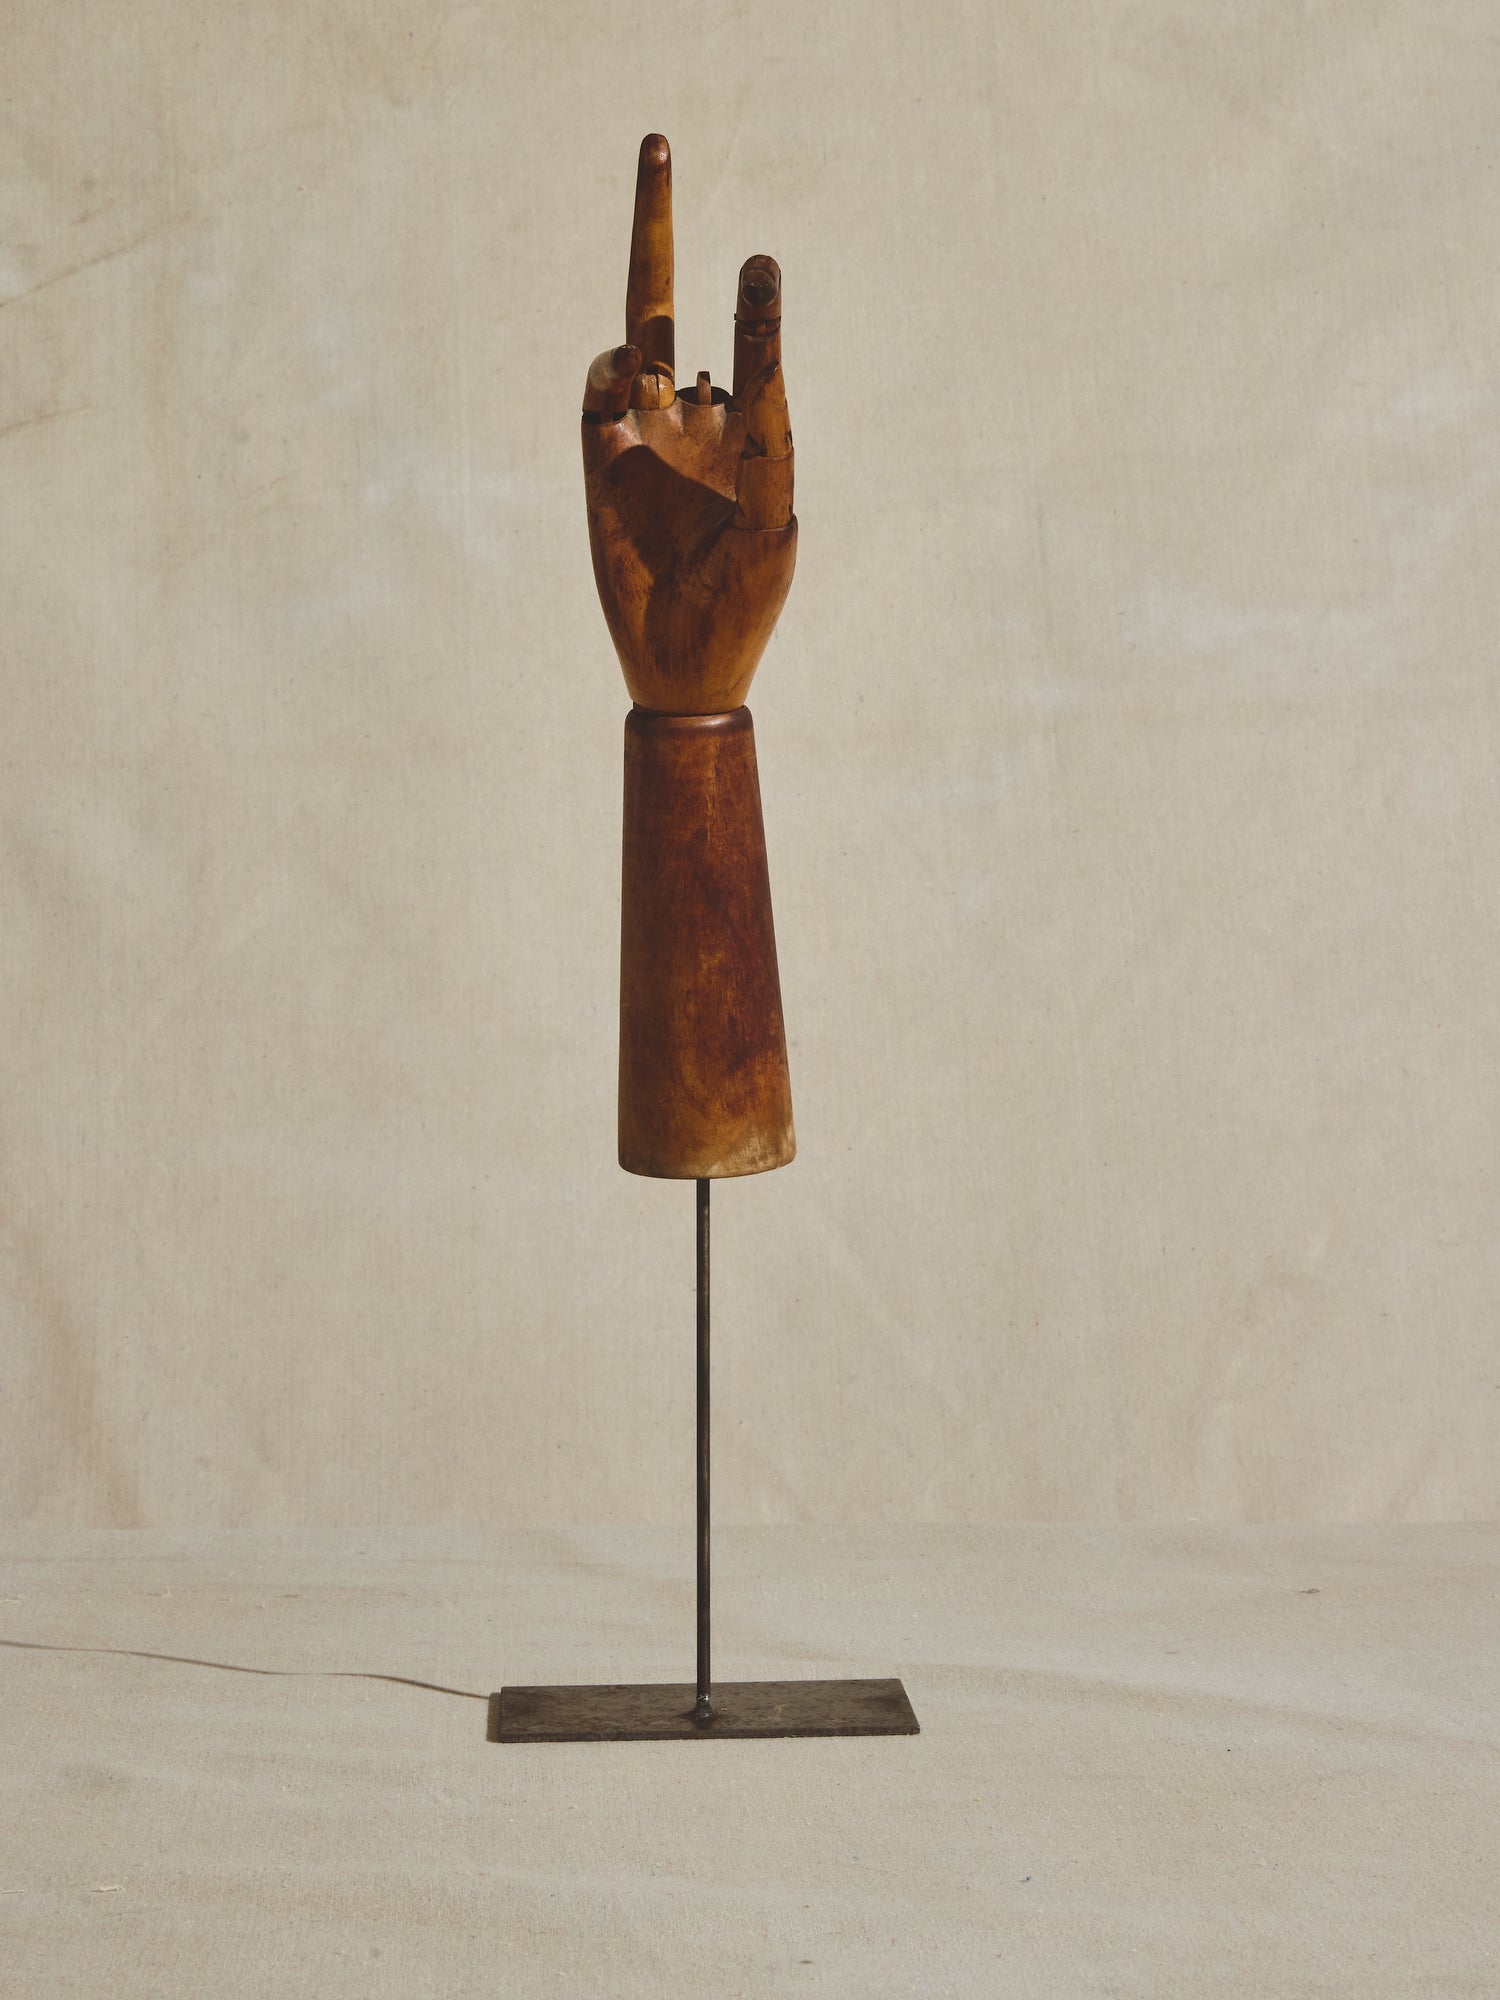 Articulated mannequin hand, missing middle finger, on metal pedestal.